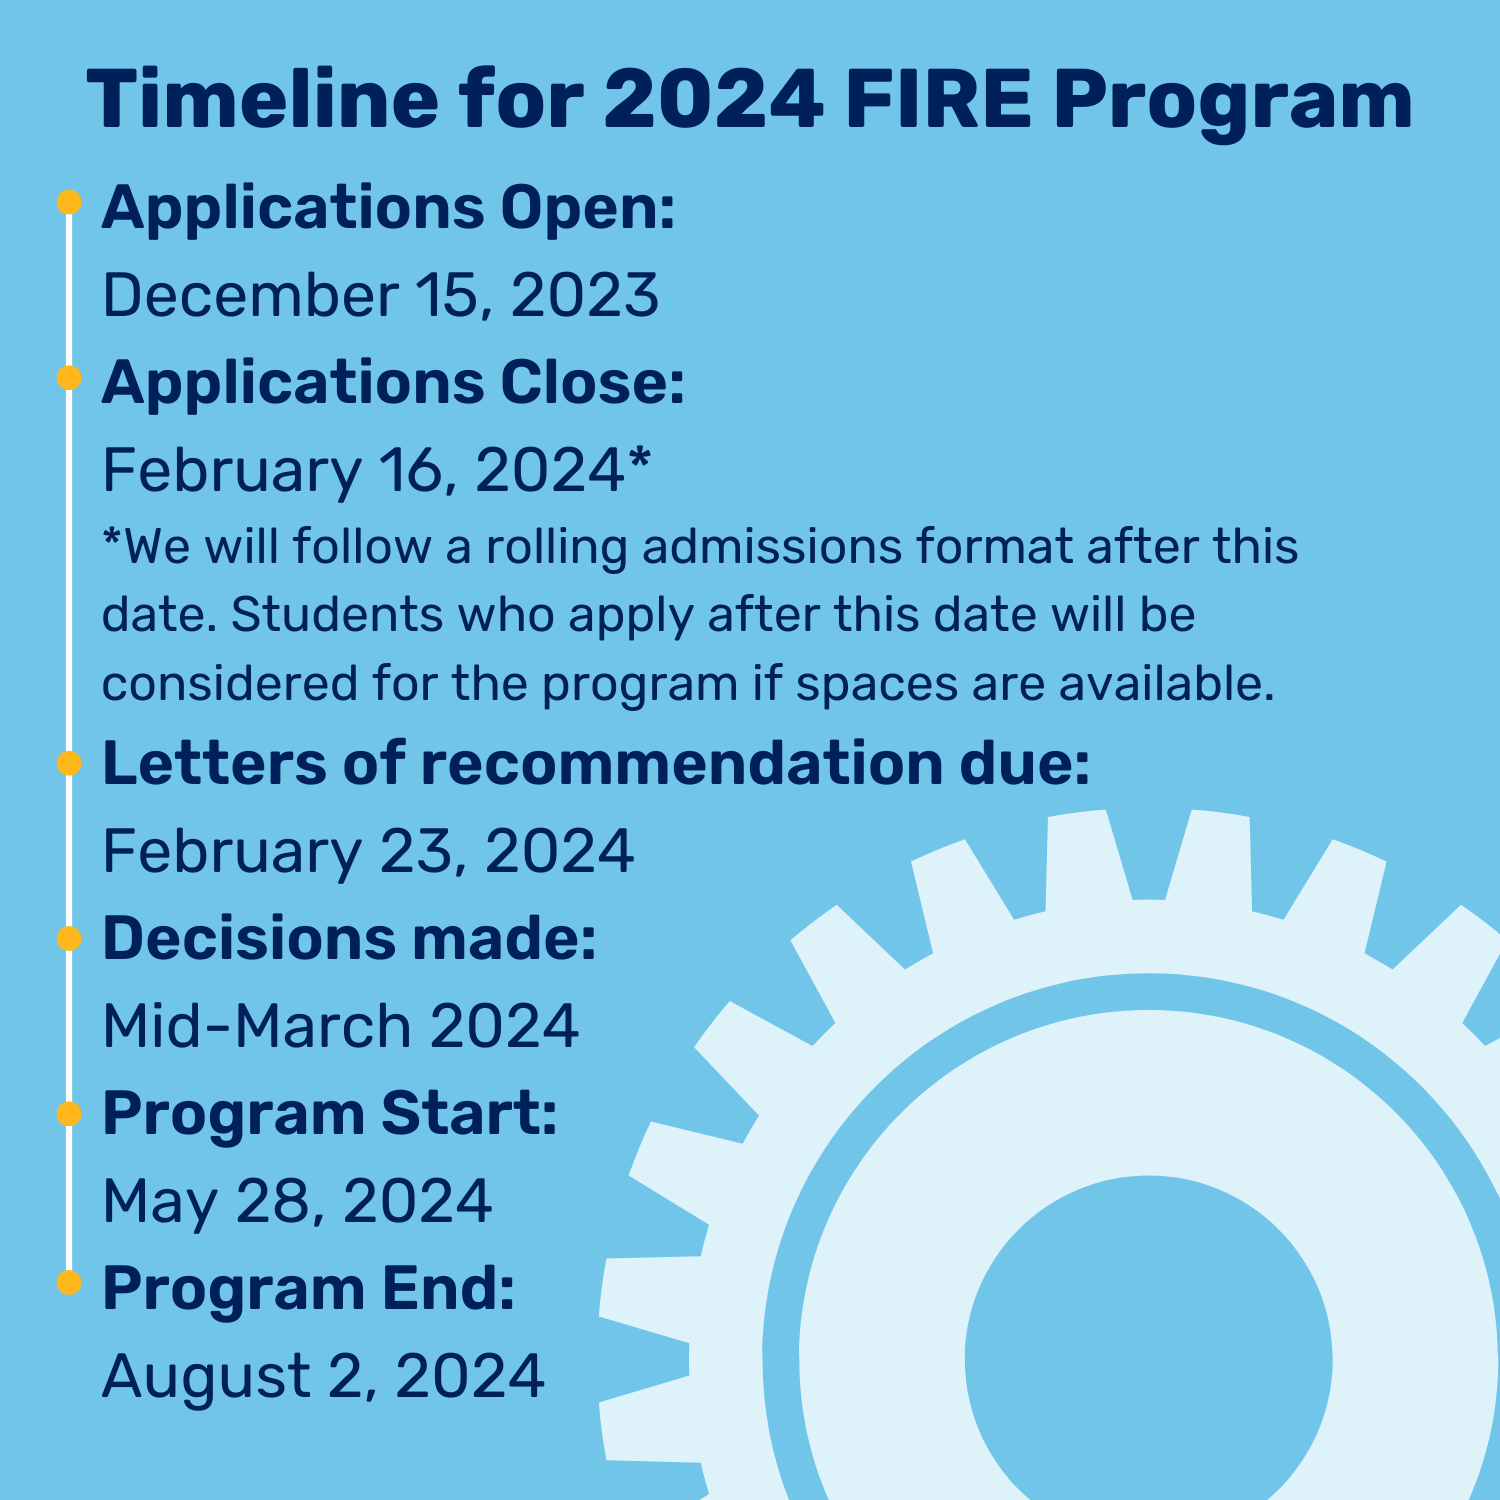 Timeline for 2024 Fire Program